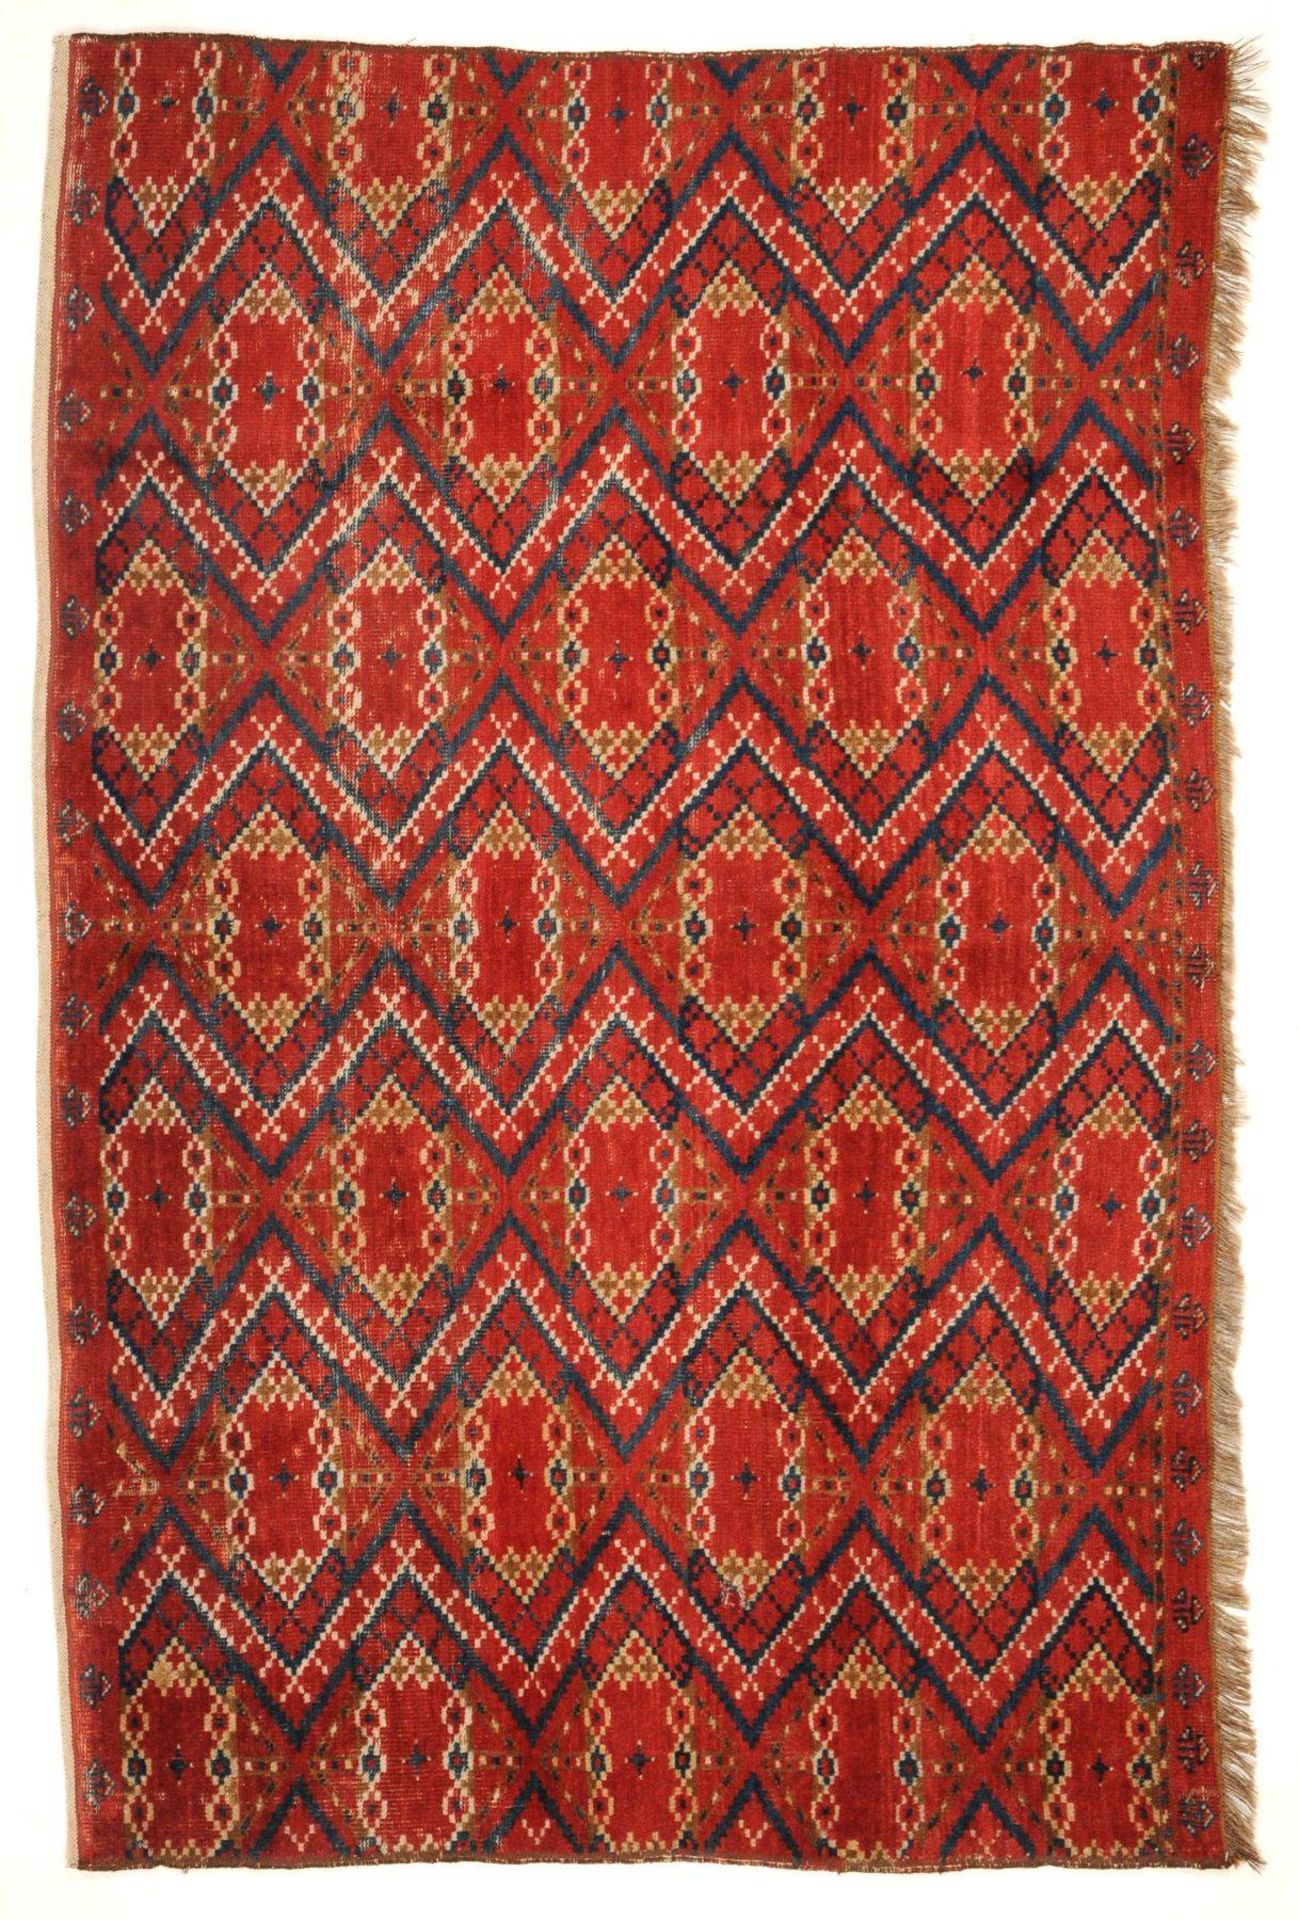 Fragment eines Beschirs (Baschir). Turkmenistan. Um 1900.